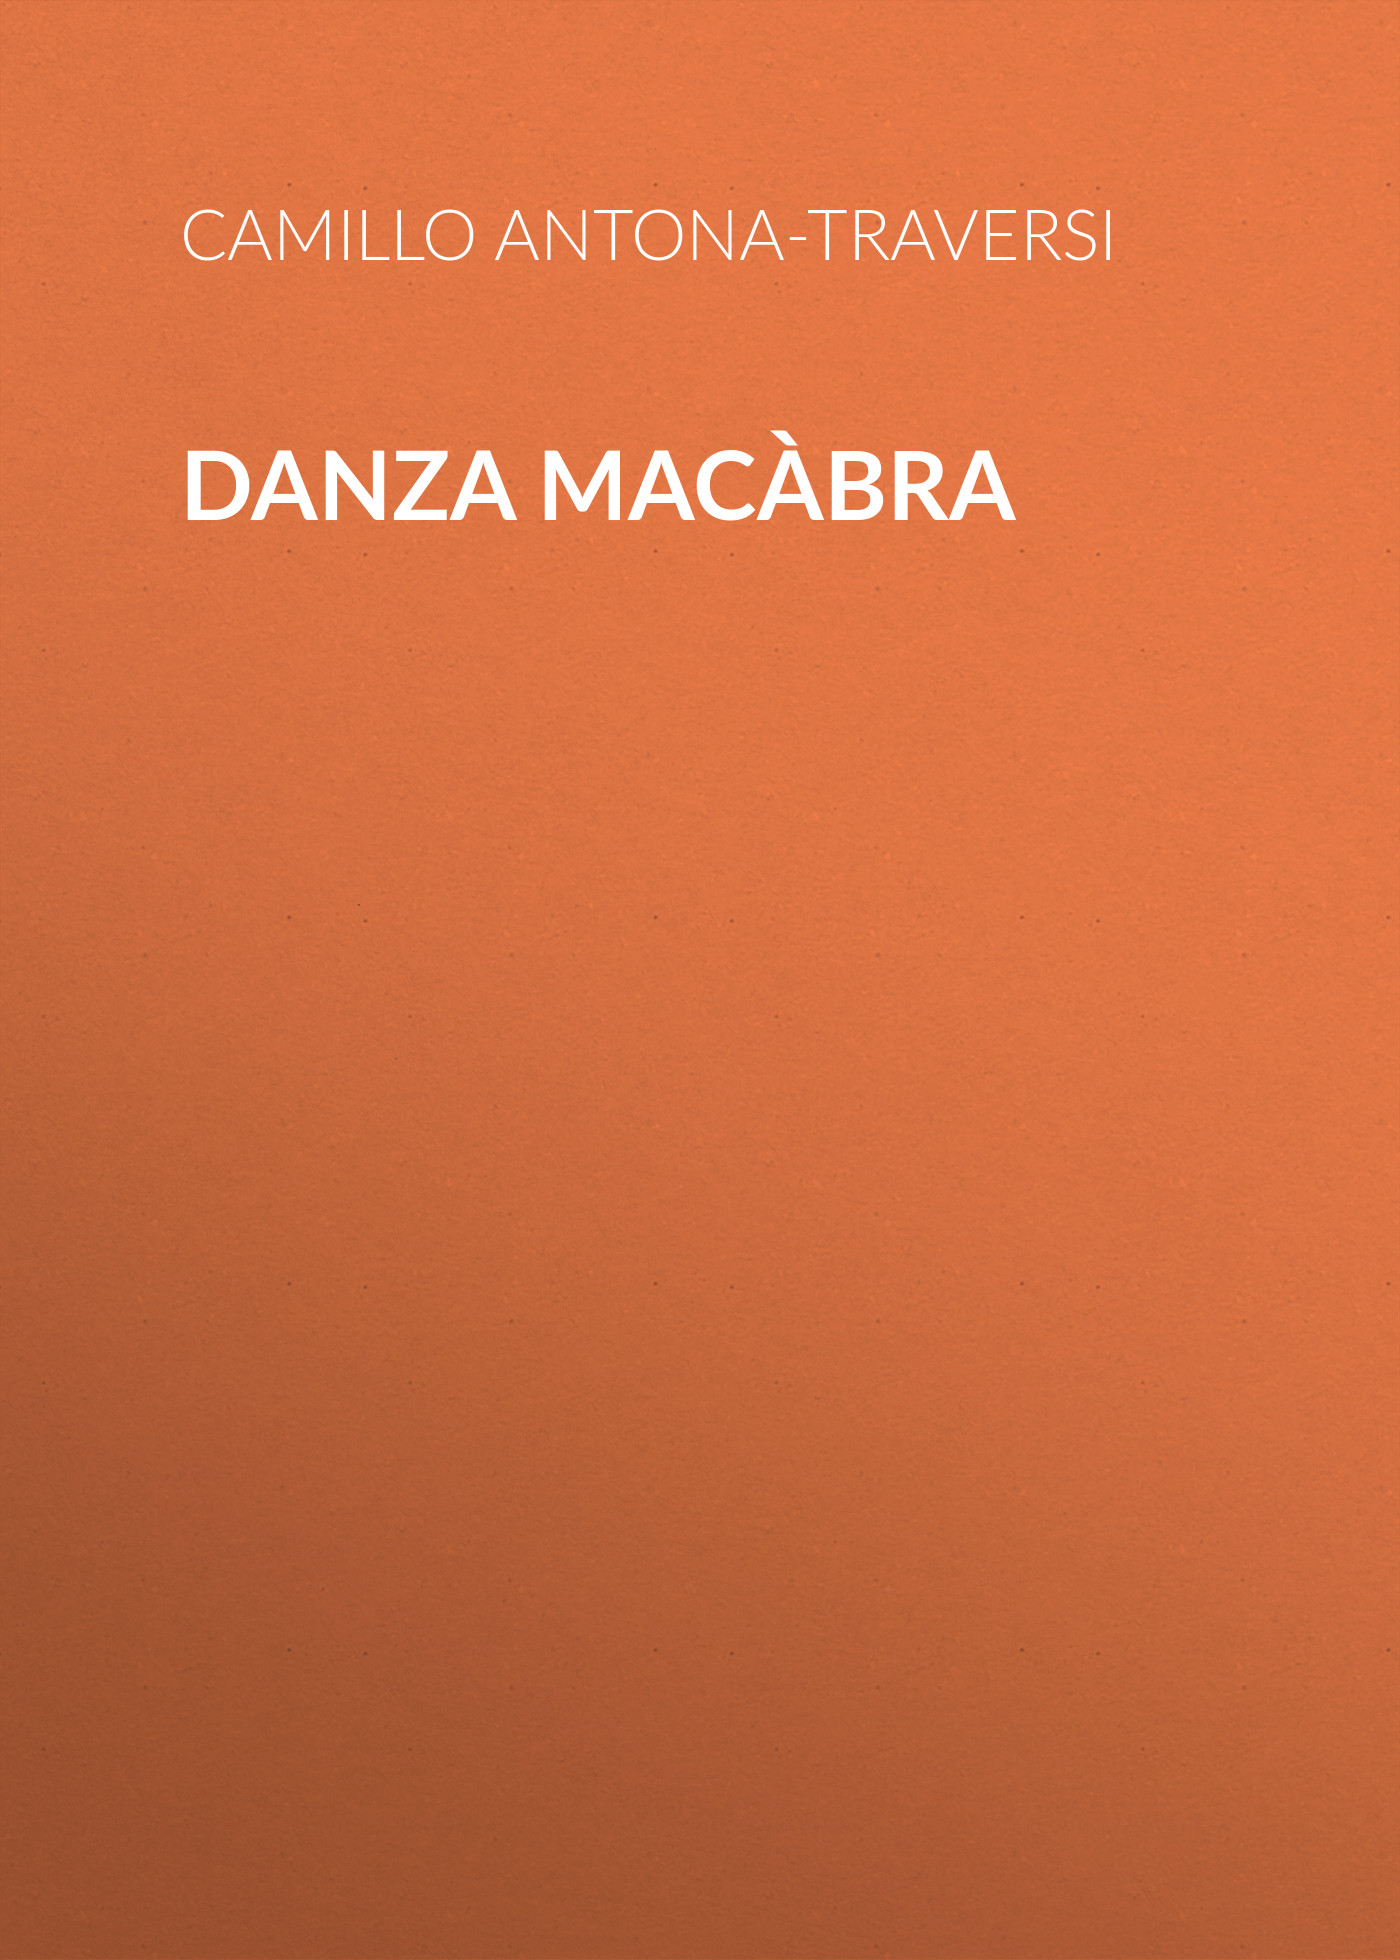 Книга Danza macàbra из серии , созданная Camillo Antona-Traversi, может относится к жанру Зарубежная старинная литература, Зарубежная классика, Зарубежная драматургия. Стоимость электронной книги Danza macàbra с идентификатором 24176036 составляет 5.99 руб.